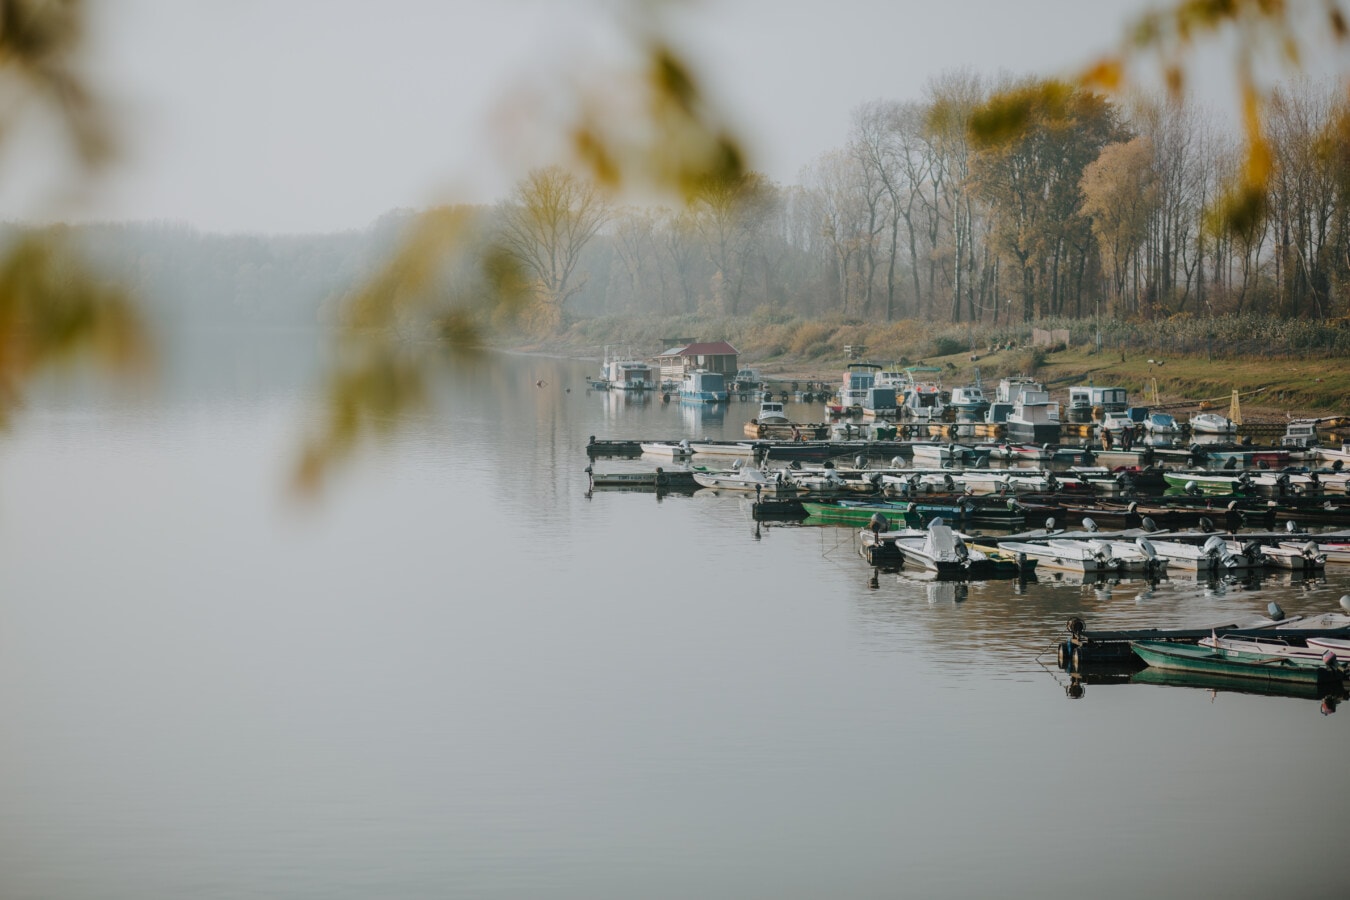 雾, 湖, 秋天季节, 港, 船, 车辆, 内河船, 水, 水位, 冷静